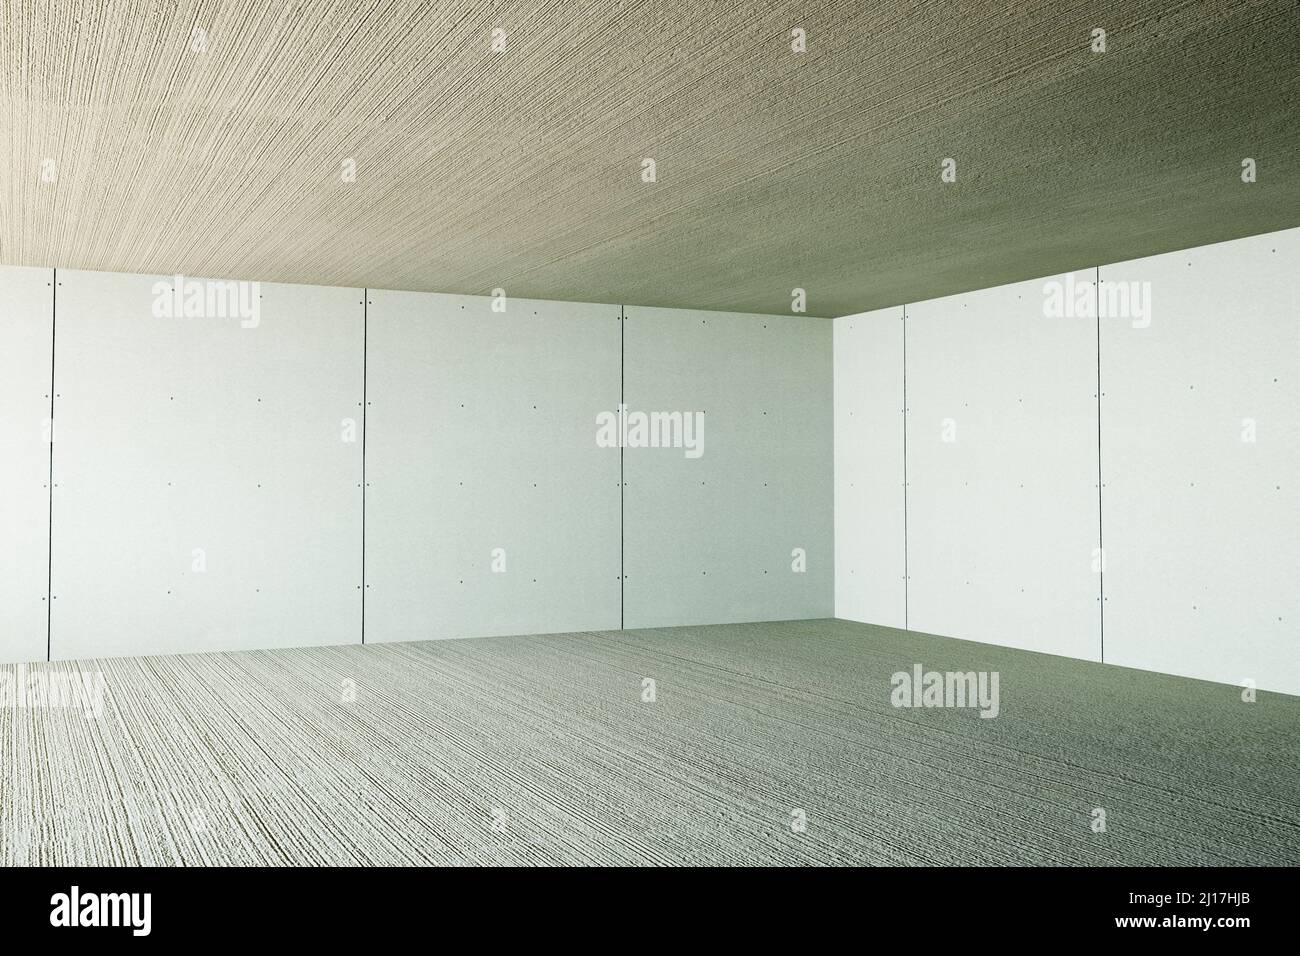 Dreidimensionale Darstellung der Ecke des unmöblierten Raumes Stockfoto